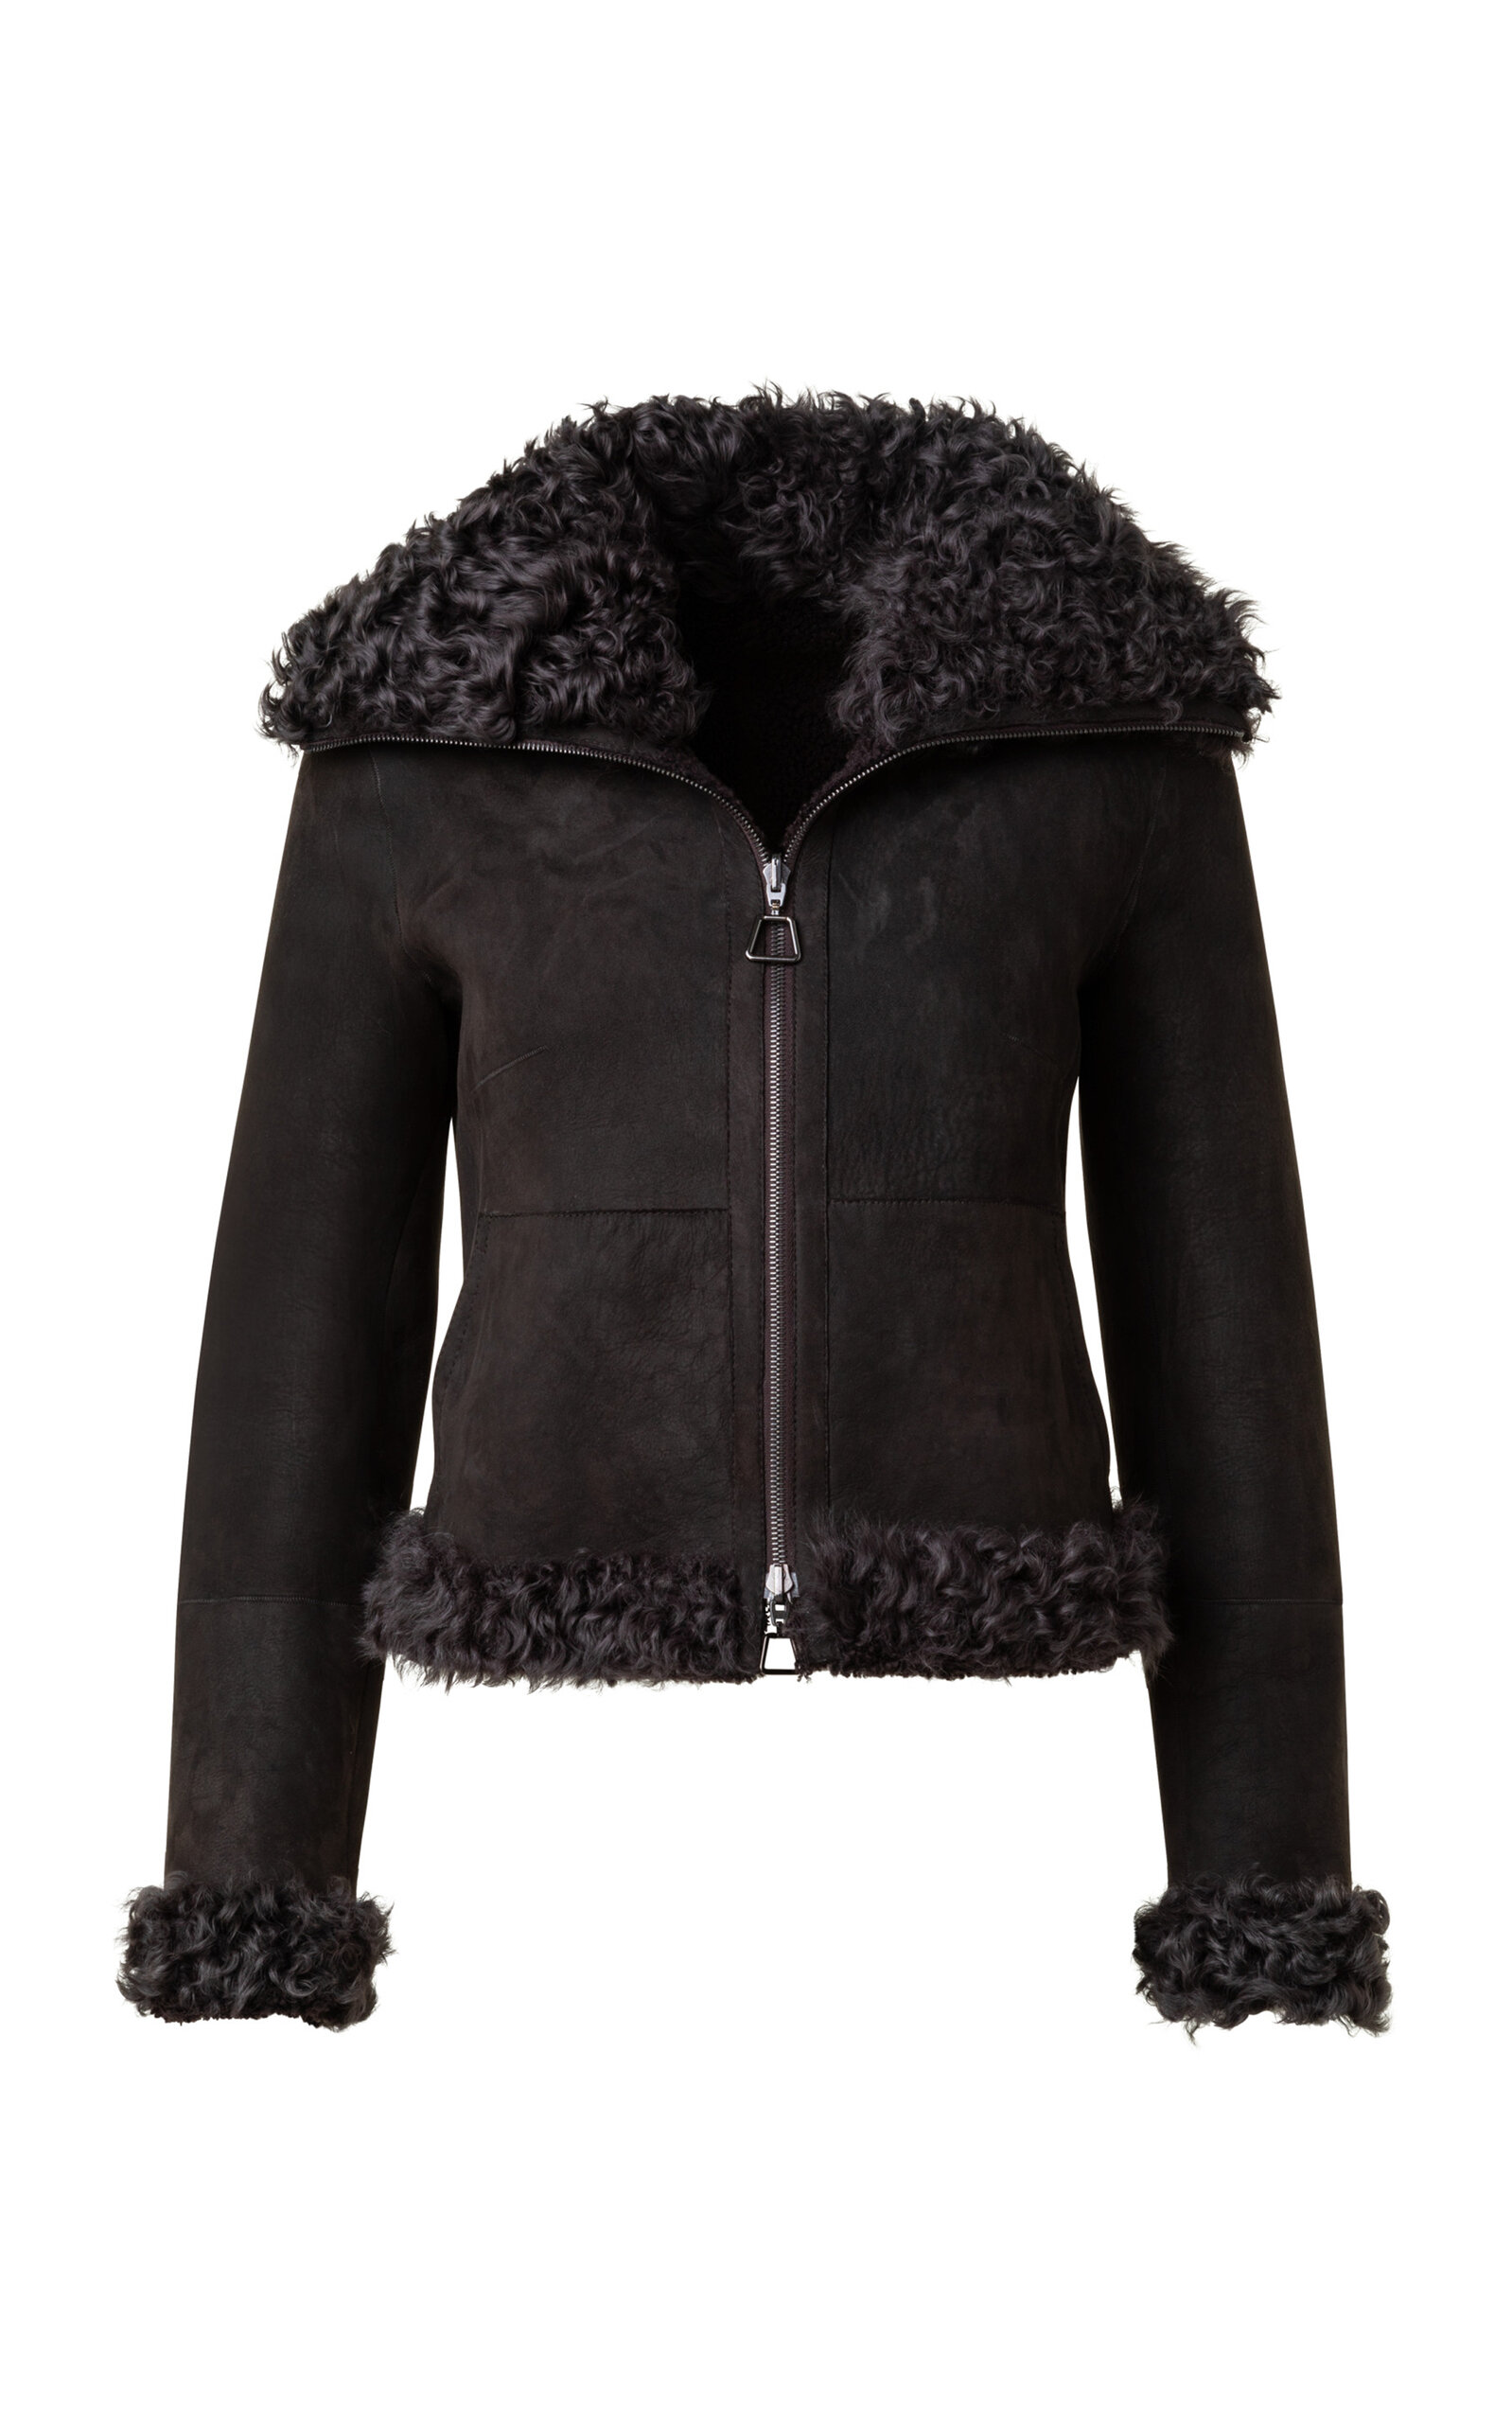 Akris Women's Sasha Reversible Leather Jacket